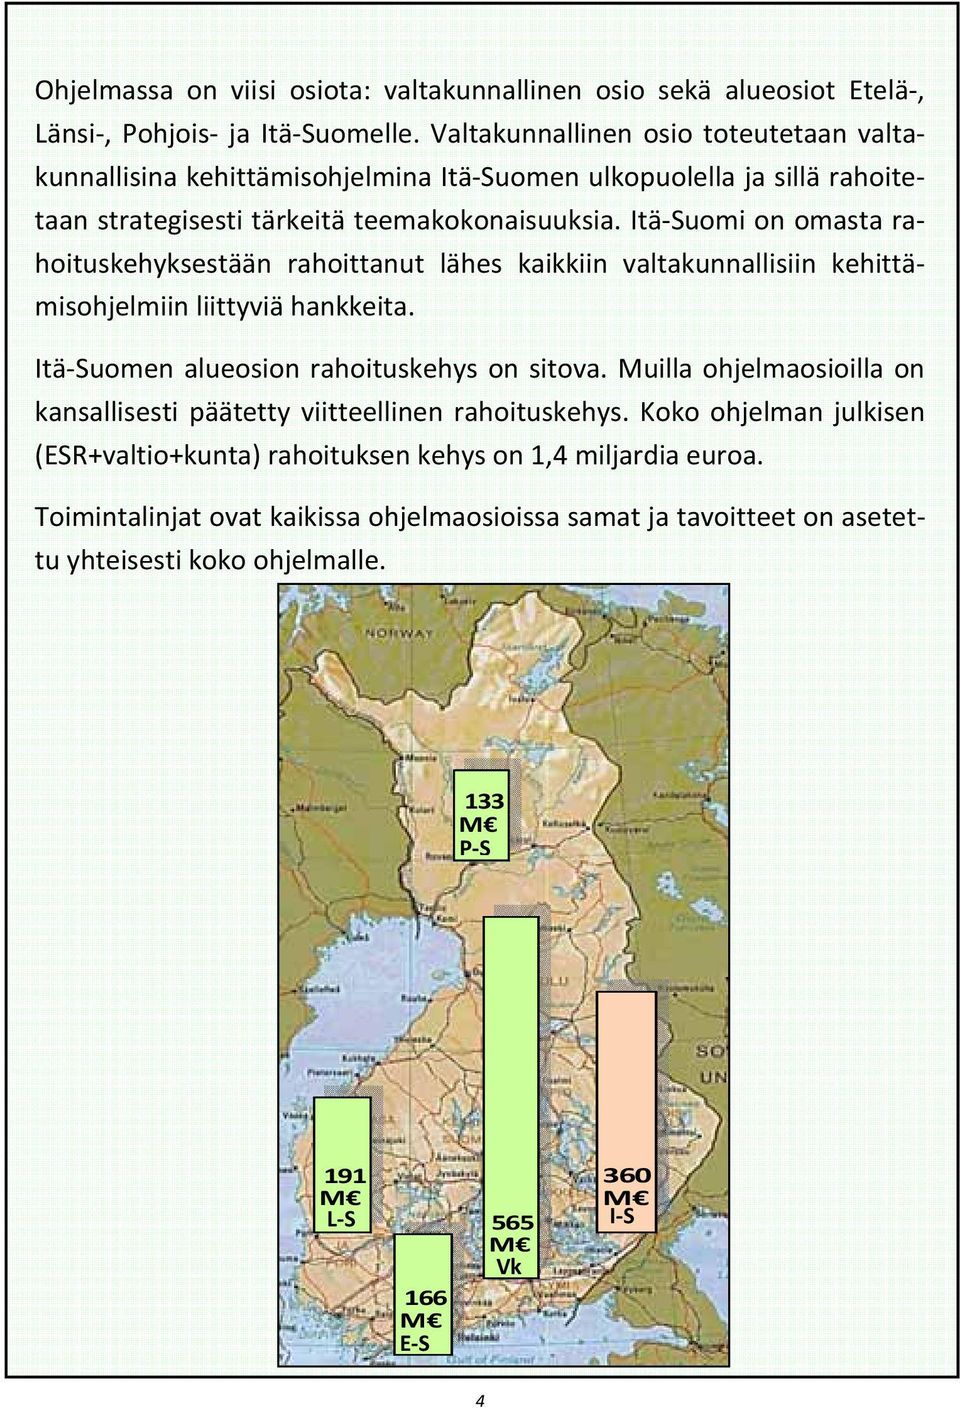 Itä-Suomi on omasta rahoituskehyksestään rahoittanut lähes kaikkiin valtakunnallisiin kehittämisohjelmiin liittyviä hankkeita. Itä-Suomen alueosion rahoituskehys on sitova.